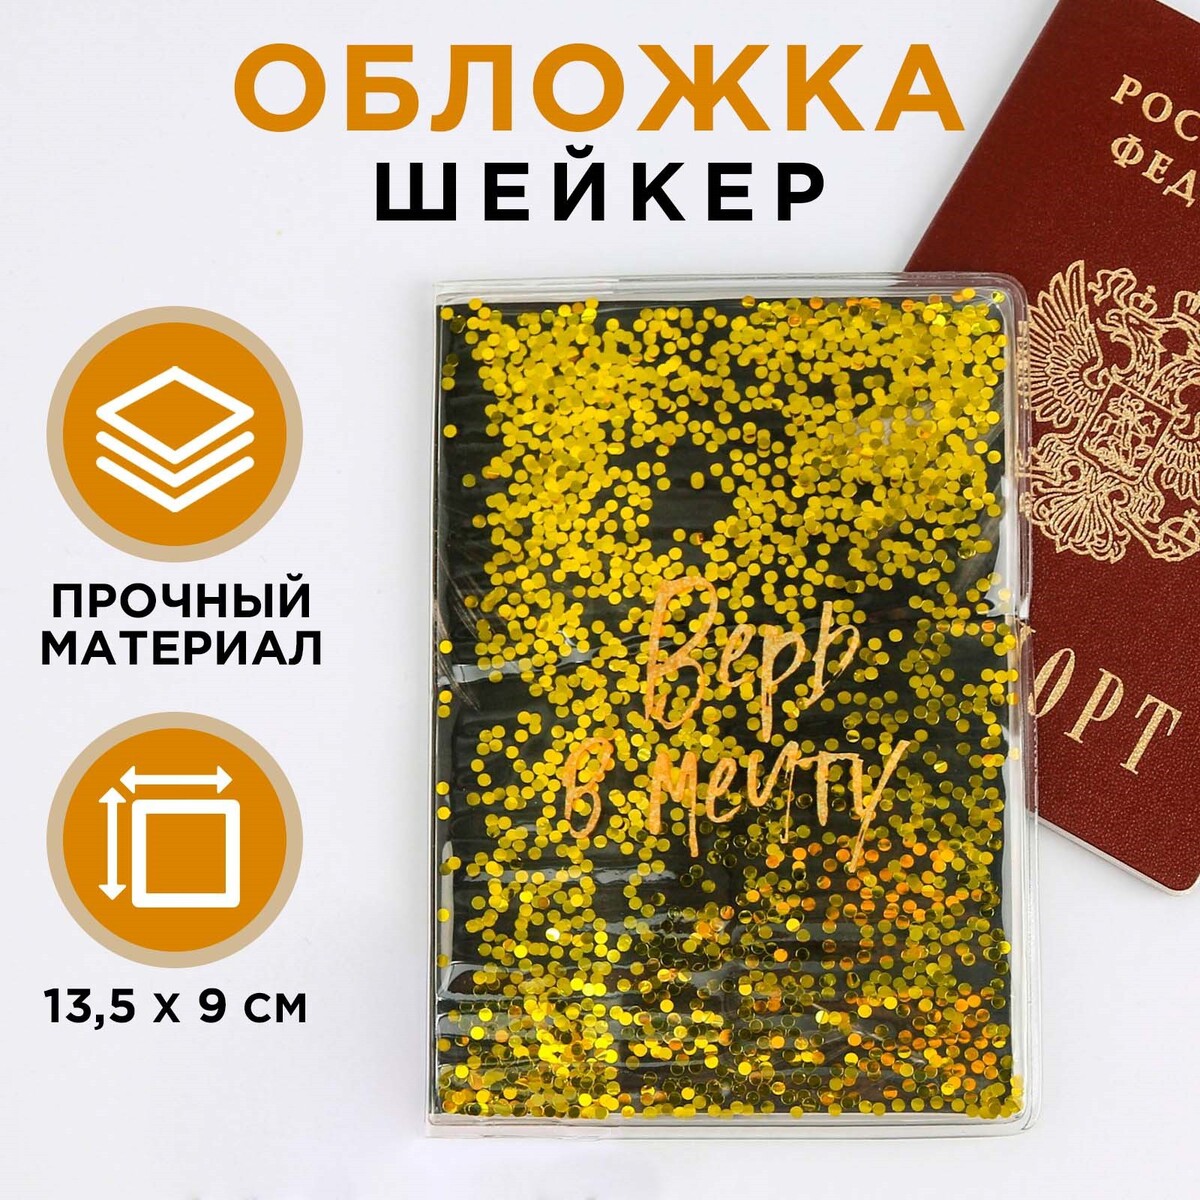 Обложка-шейкер для паспорта No brand